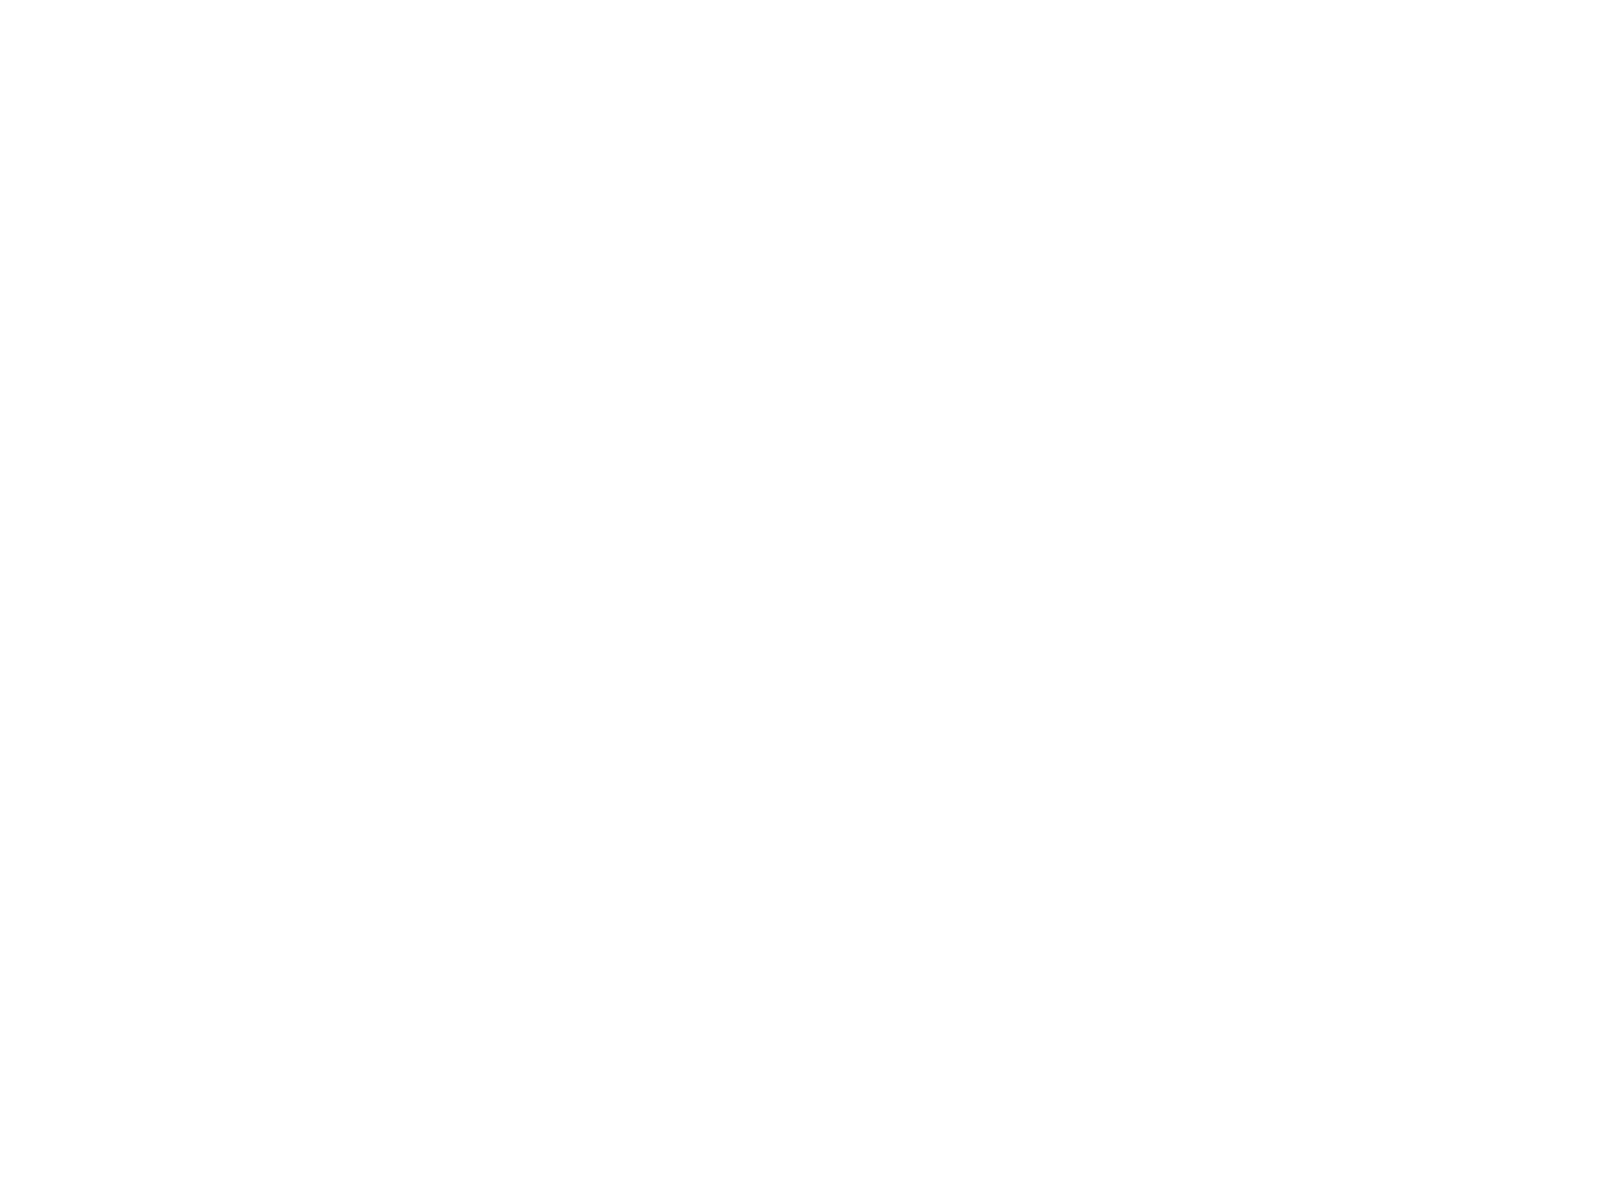 Application Bar UI design logo